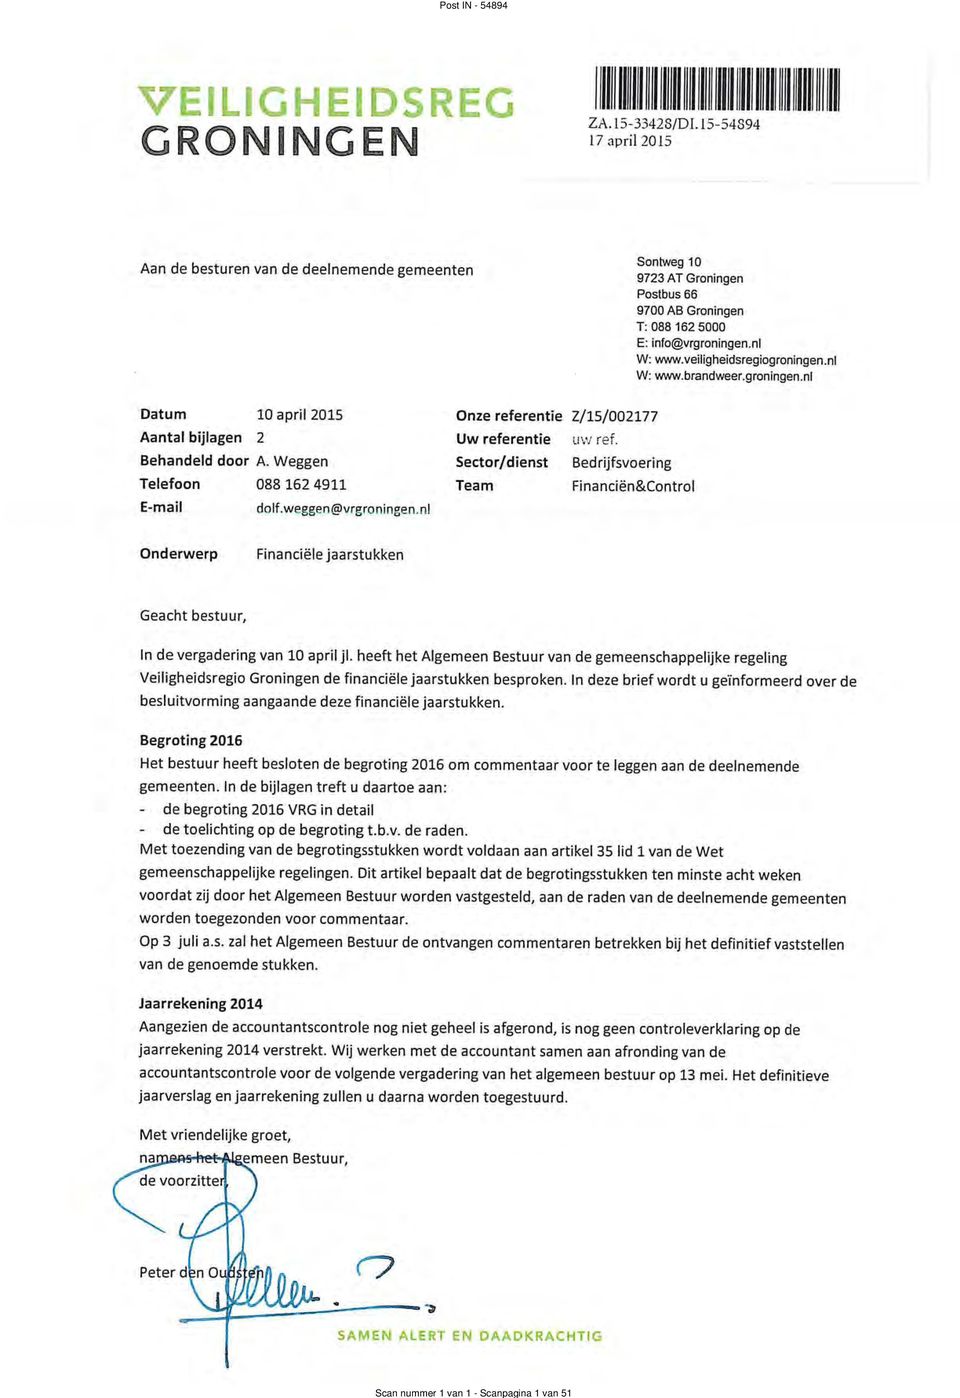 brandweer.groningen.nl Datum 10 april 2015 Onze referentie Z/15/002177 Aantal bijlagen 2 Uw referentie tlvg' ref. Behandeld door A.